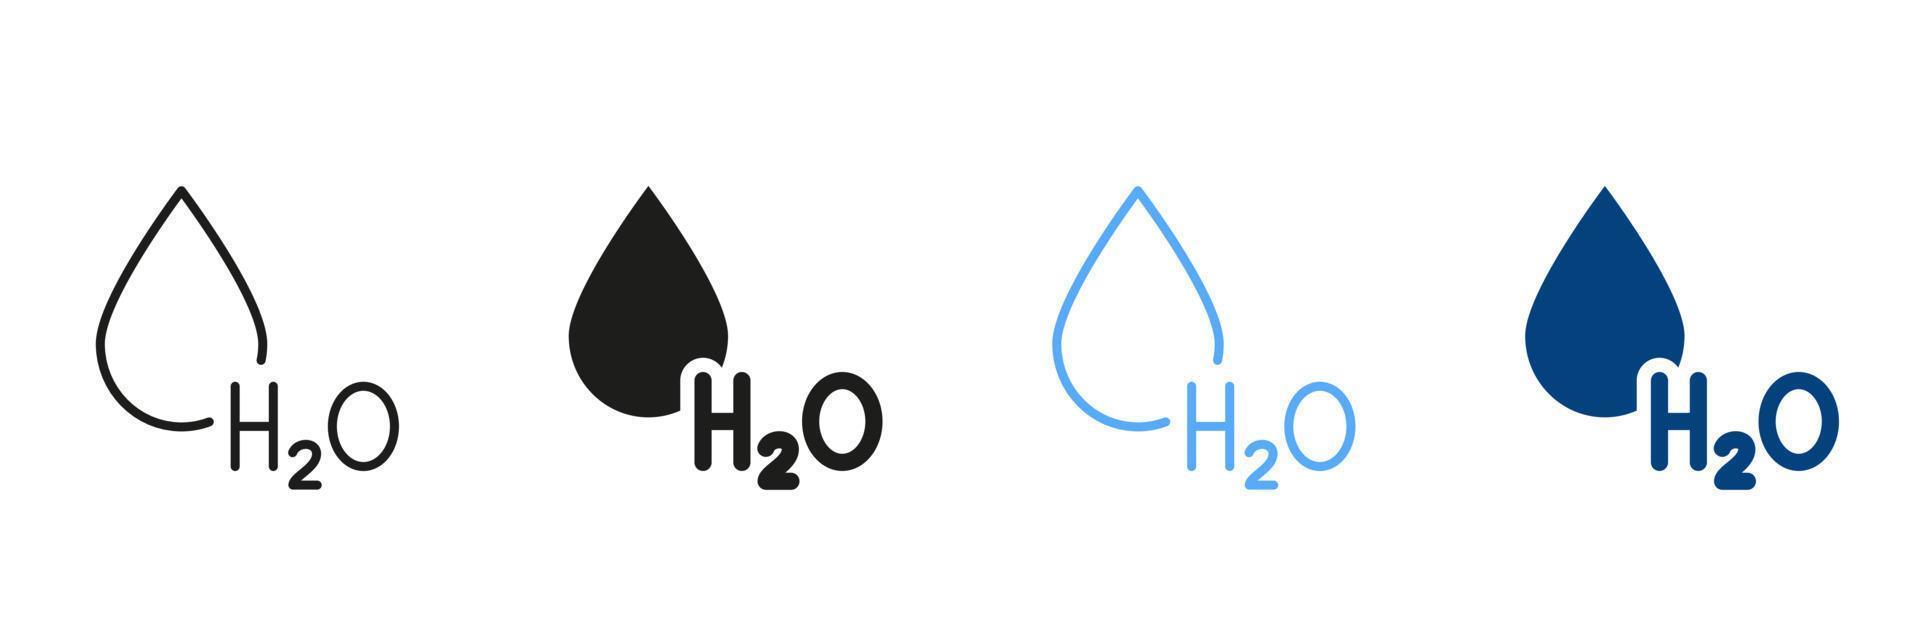 H2O silueta y línea icono colocar. agua soltar negro y color firmar recopilación. químico fórmula para agua. símbolo de Fresco agua simbolos aislado vector ilustración.